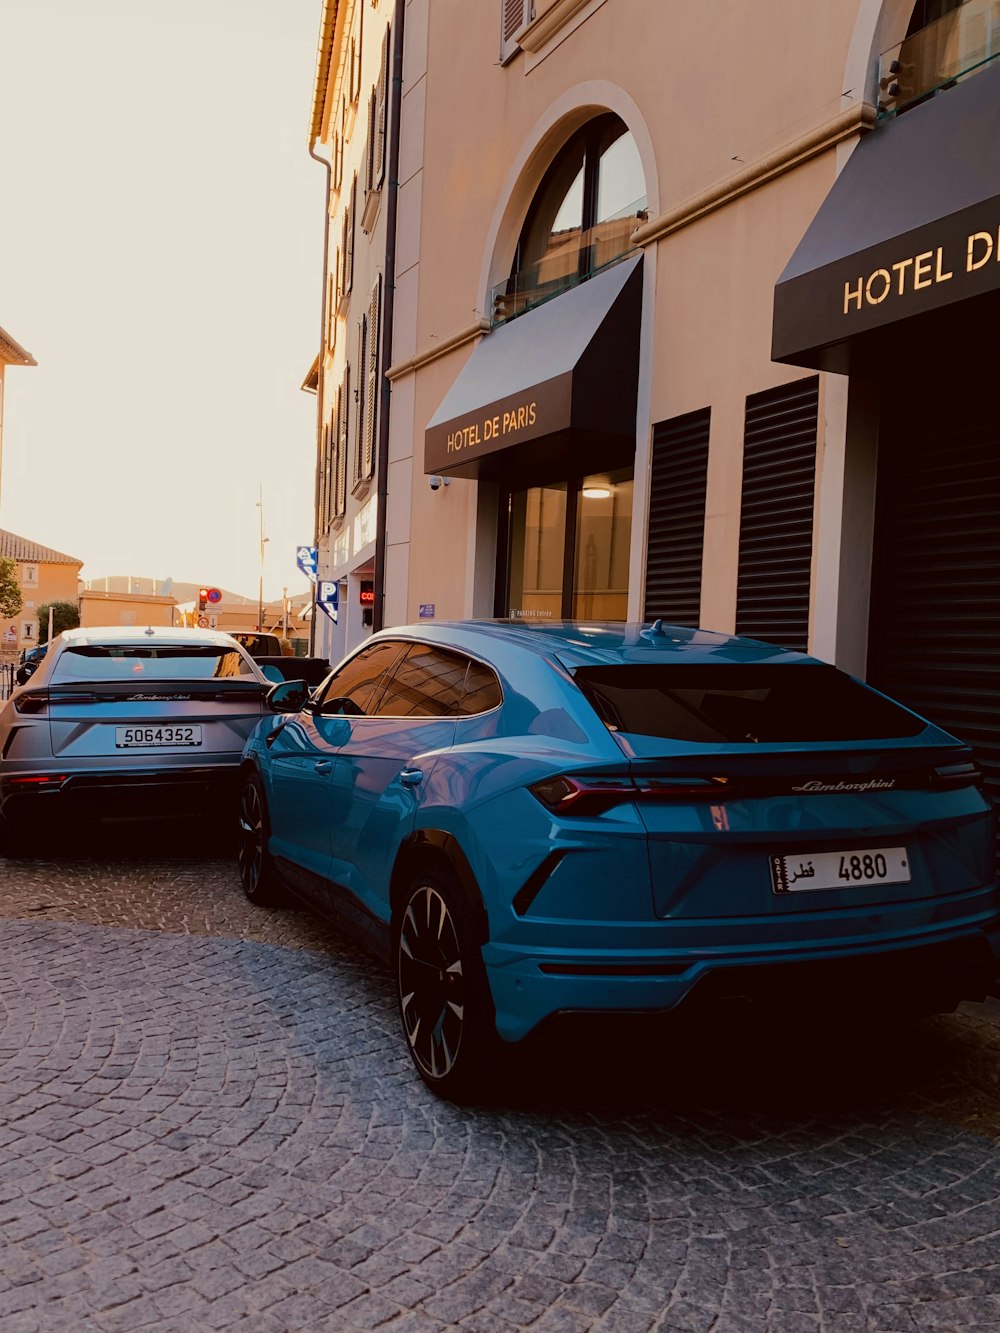 ホテルの前に停まっている青いスポーツカー